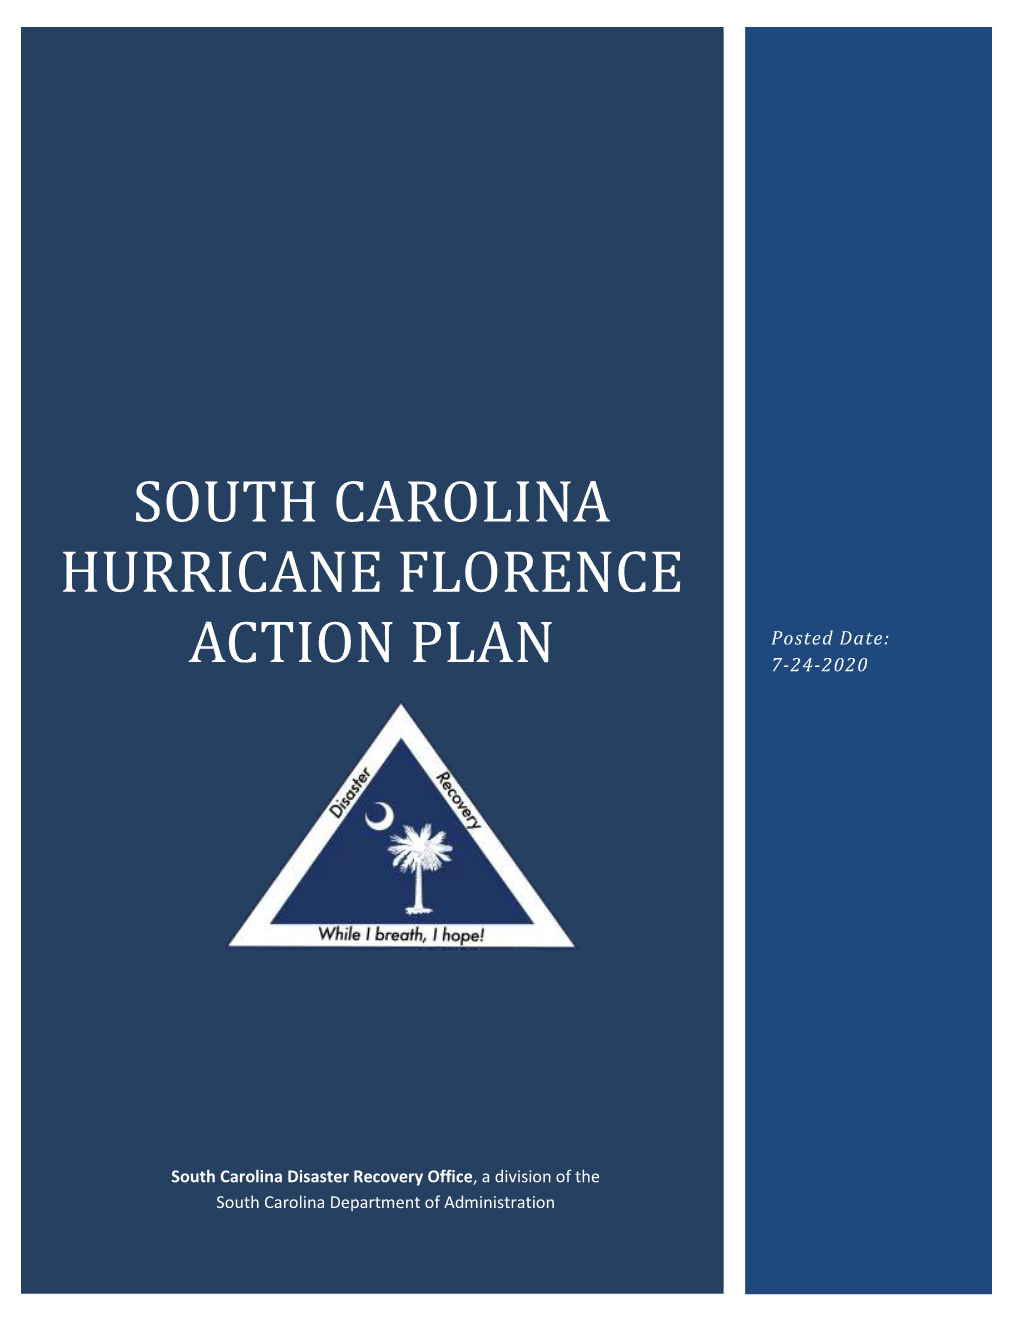 South Carolina Hurricane Florence Action Plan